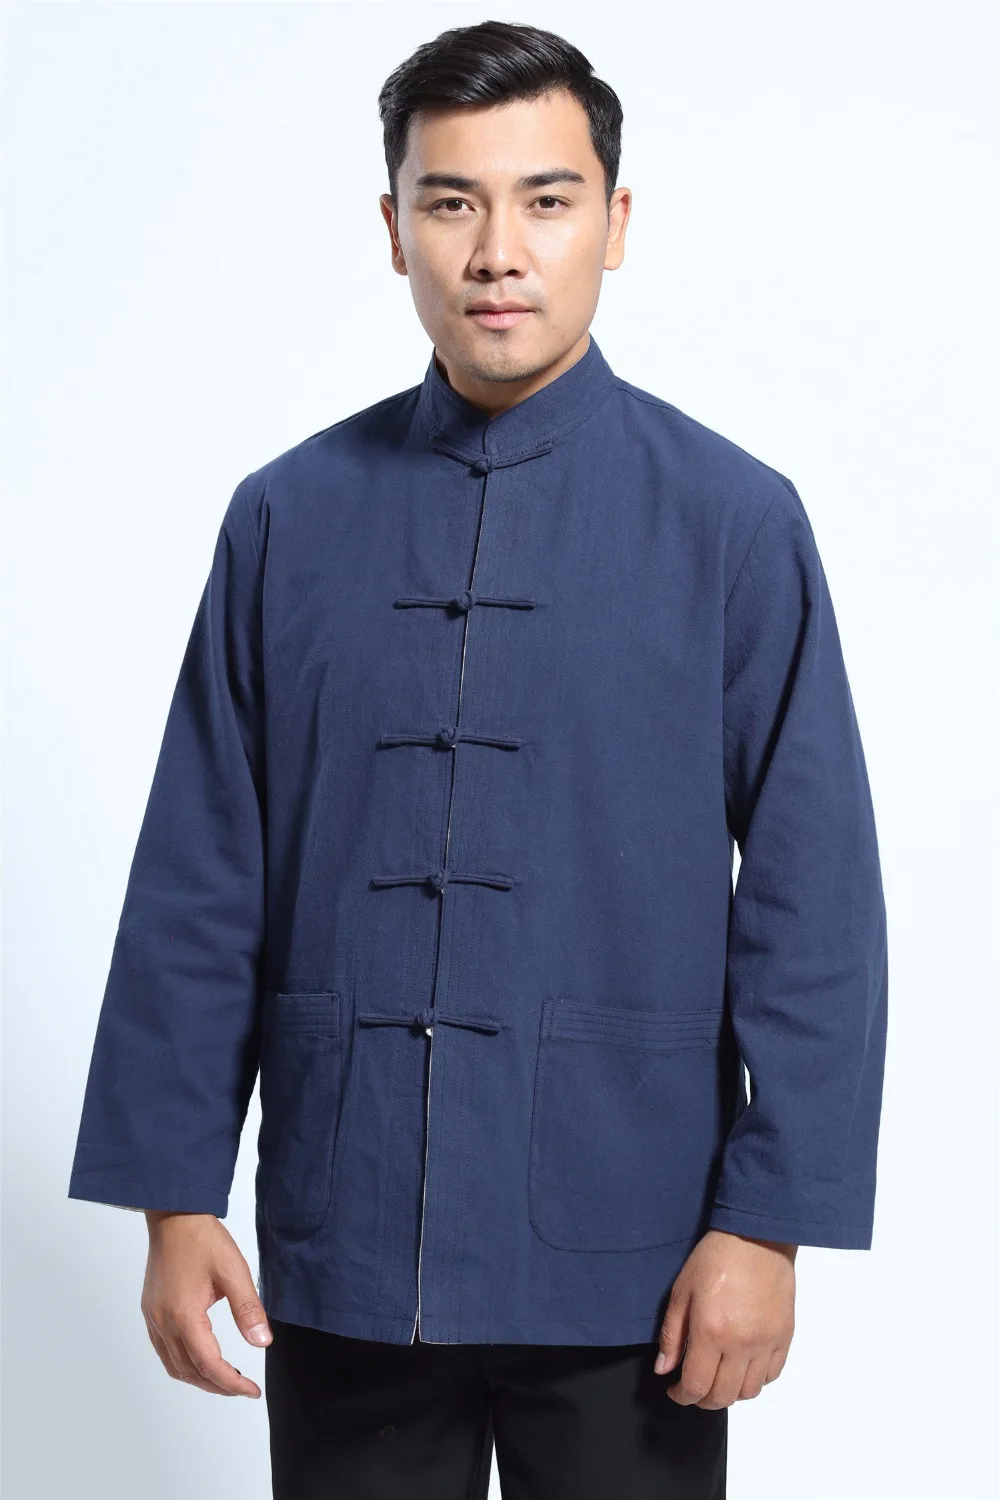 Шанхай история рубашка с длинными рукавами Китайская традиционная одежда смесь белье Тан костюм воротник стойка Двусторонняя куртка 2 цвета